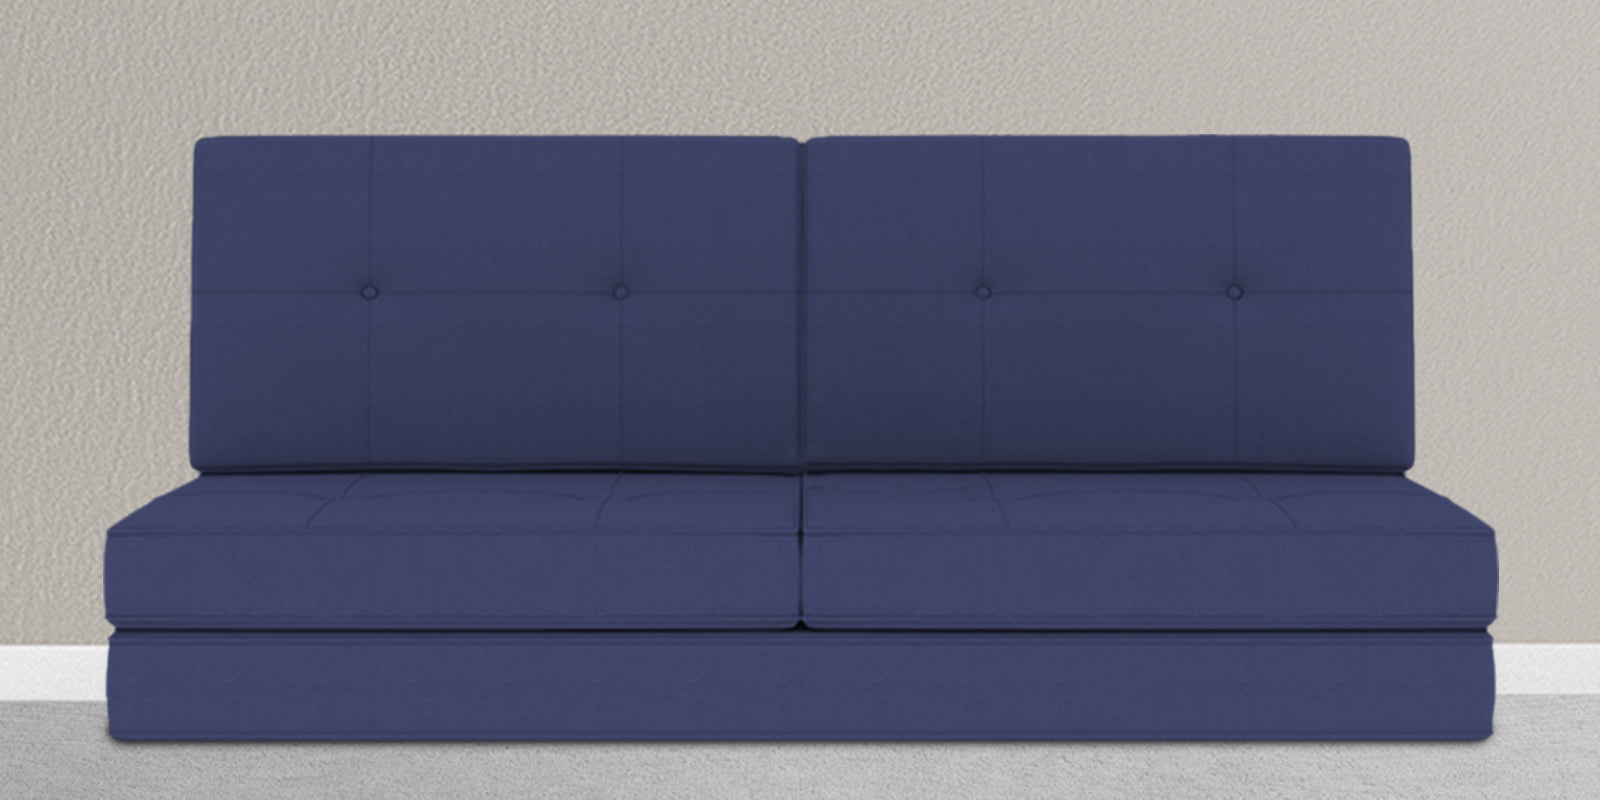 Cora Fabric 2 Seater Futon Sofa Cum Bed in Denim Blue Colour